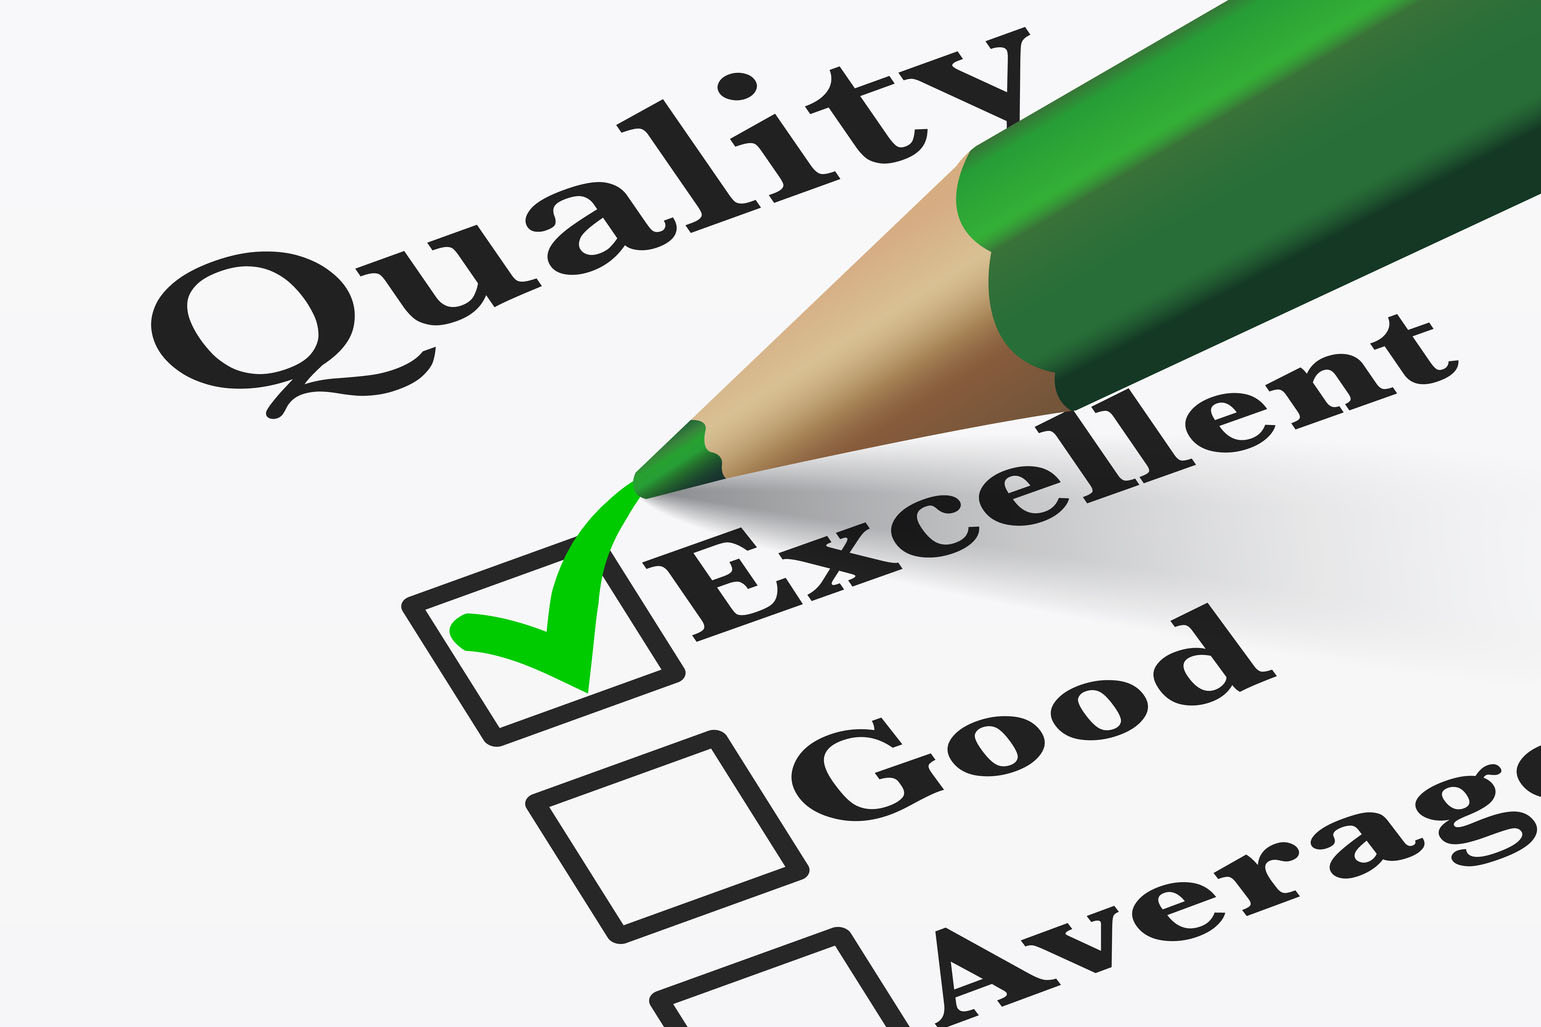 nico europe info qualität quality checkliste qualität, grüner stift macht haken bei "exzellent"